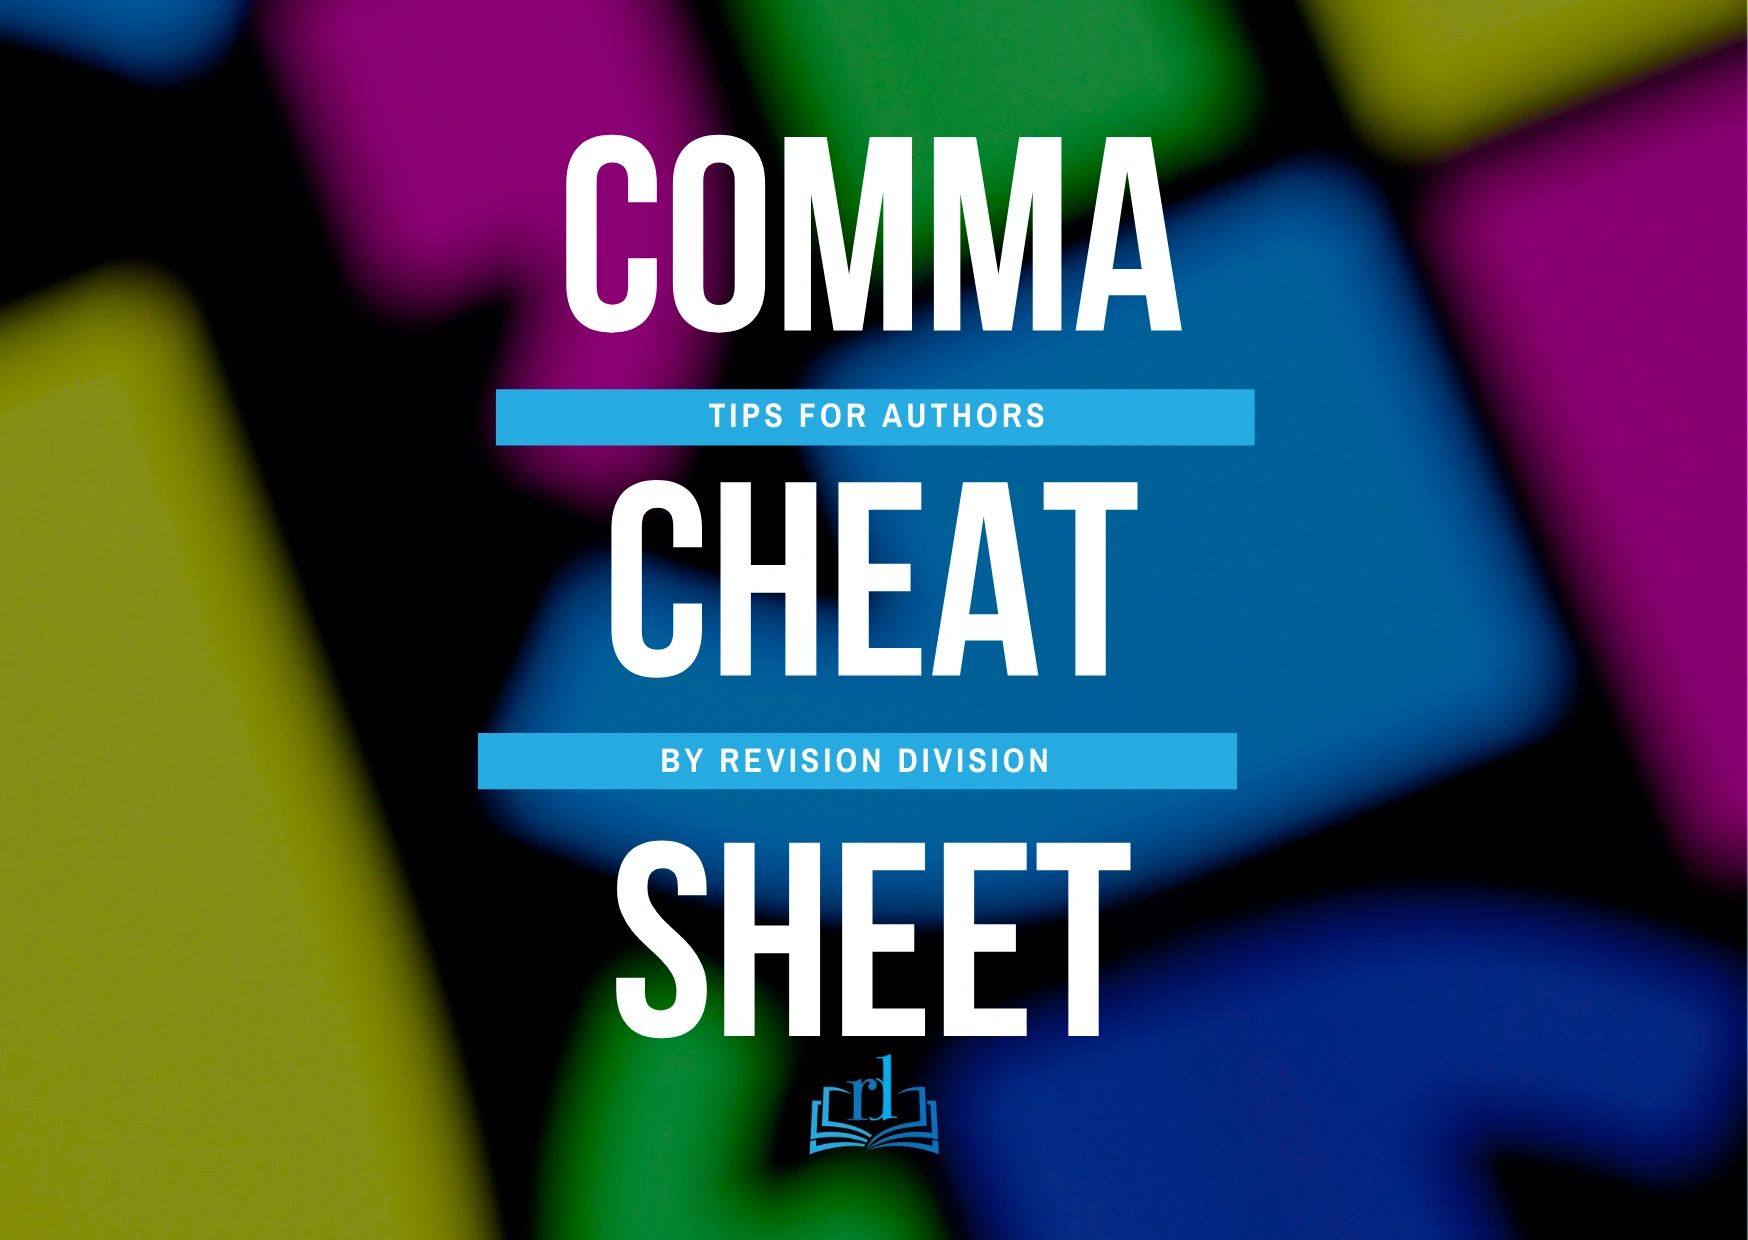 comma-cheat-sheet